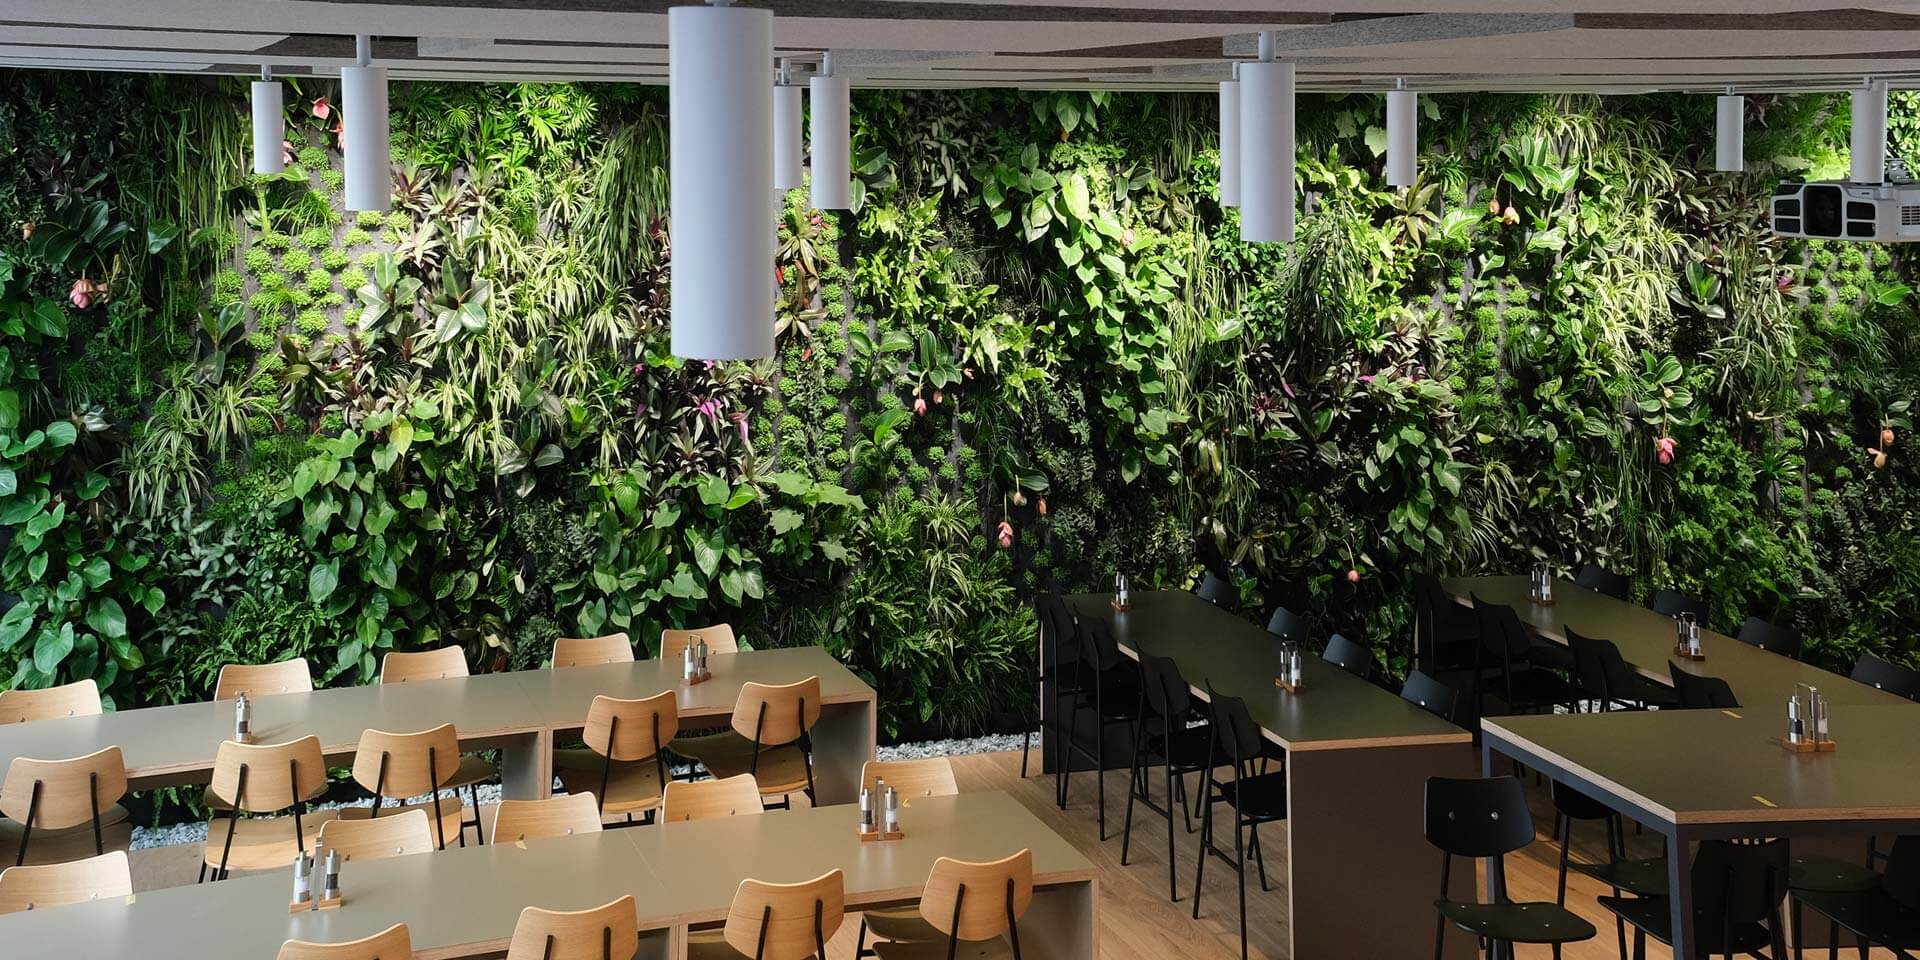 Interior de una cafetería moderna con una gran *pared vegetal de Vivit, fabricante suizo* en las paredes, con mesas de madera, sillas negras e iluminación tenue.